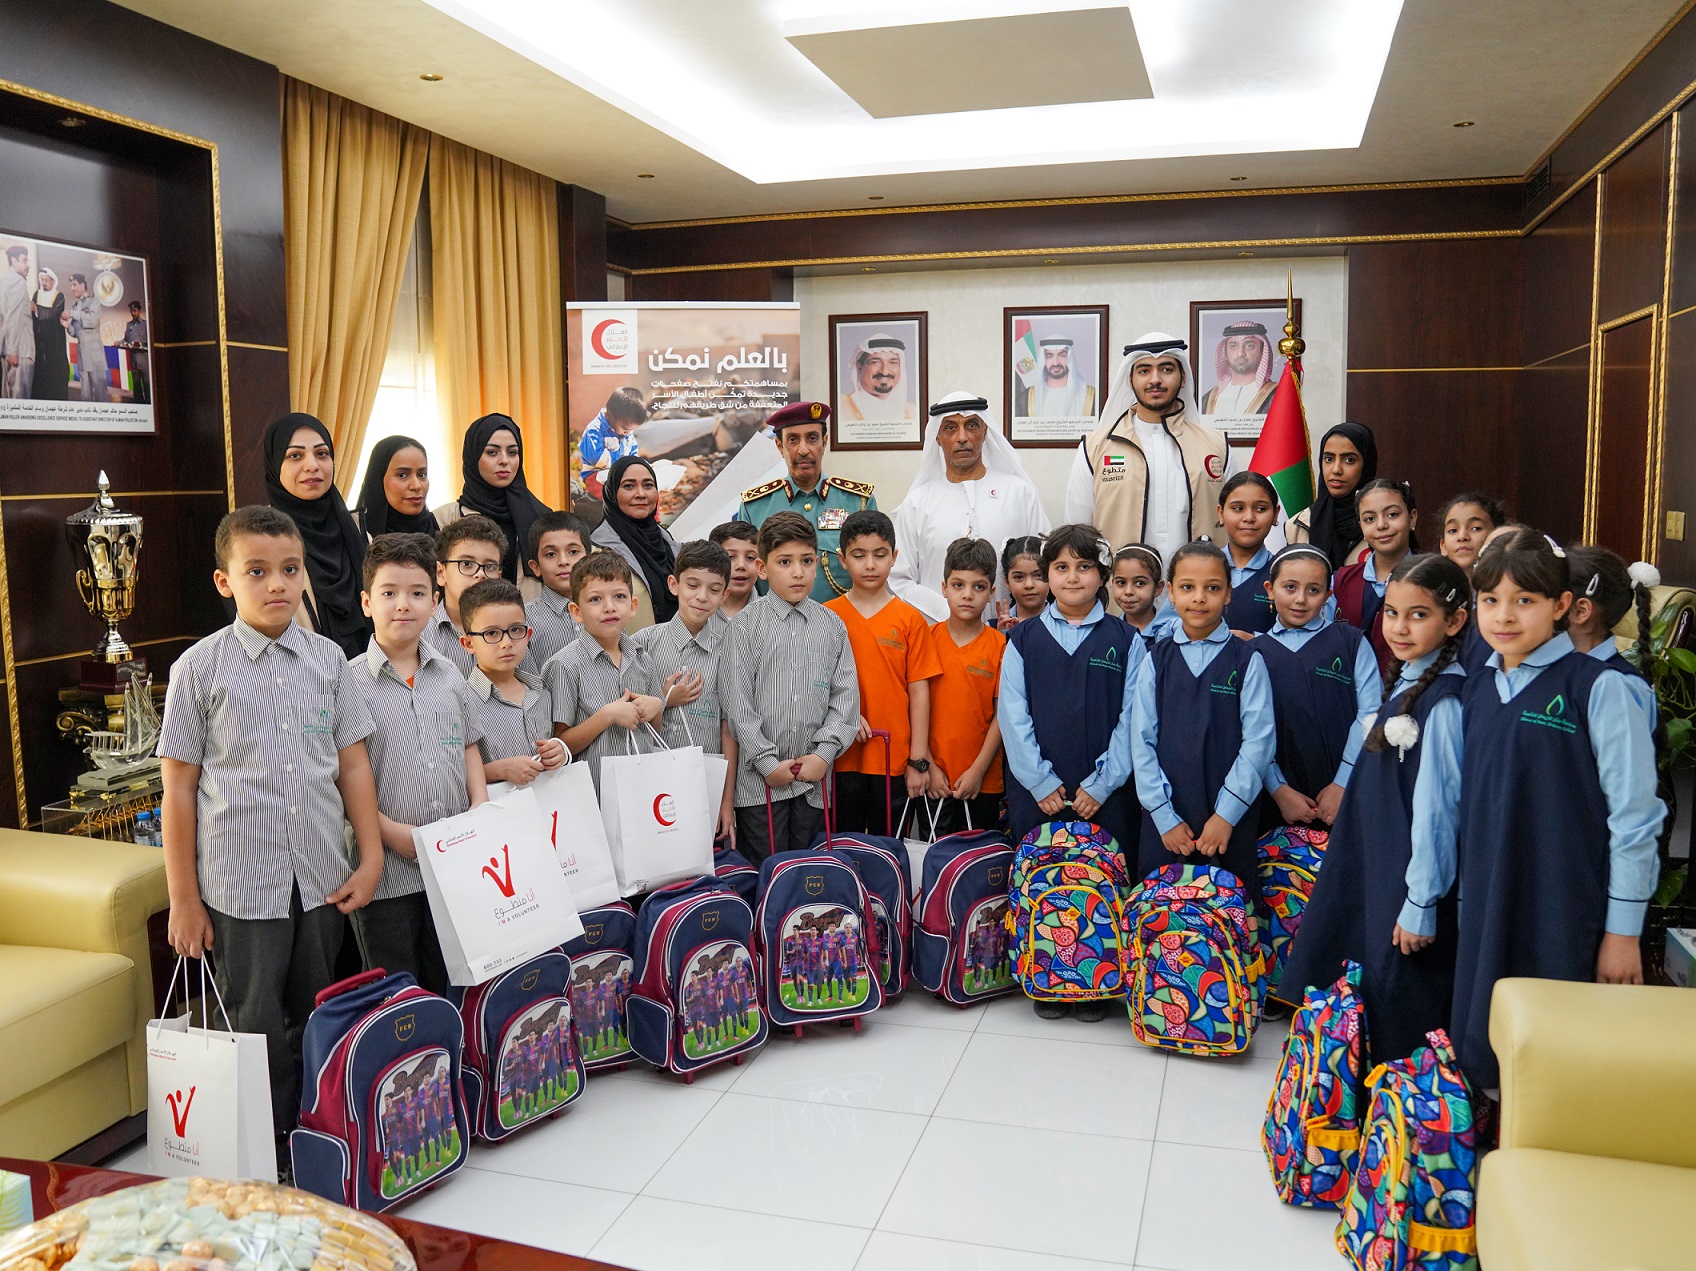 شرطة عجمان تدعم مبادرة " بالعلم نمكن " الخيرية بالتعاون مع هيئة الهلال الأحمر